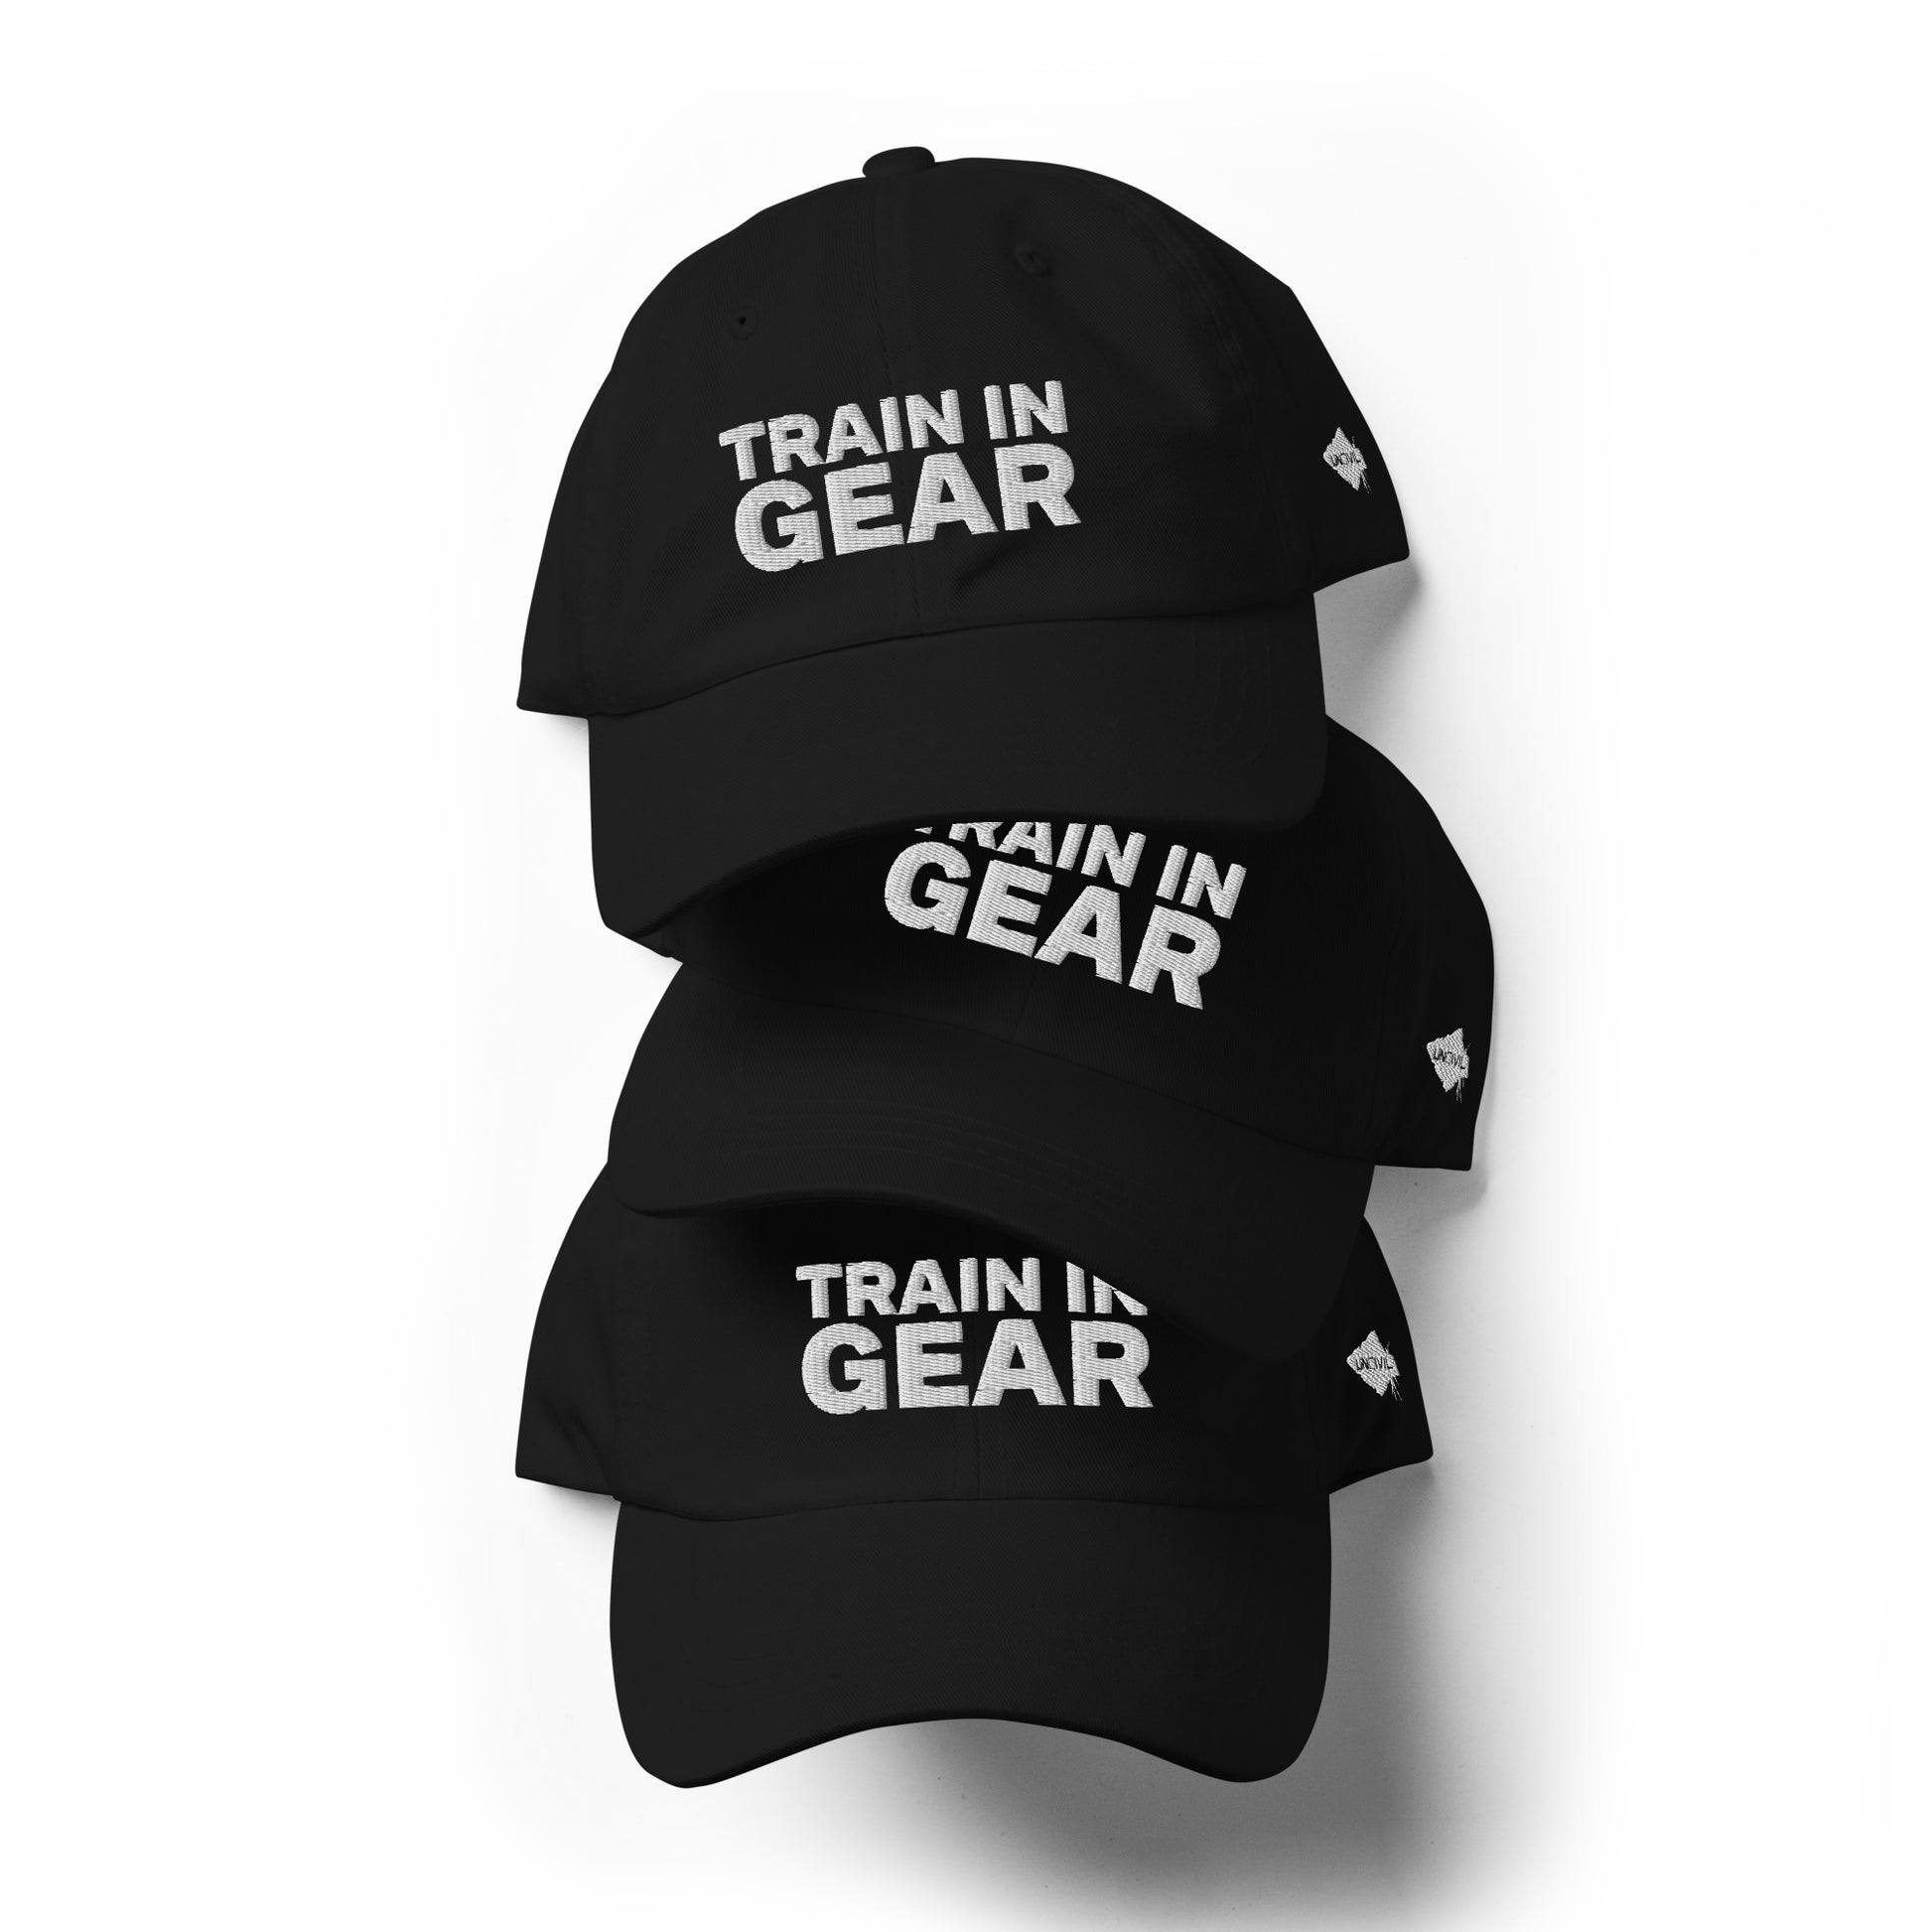 Train in Gear Firefighter hat. Black baseball hat.